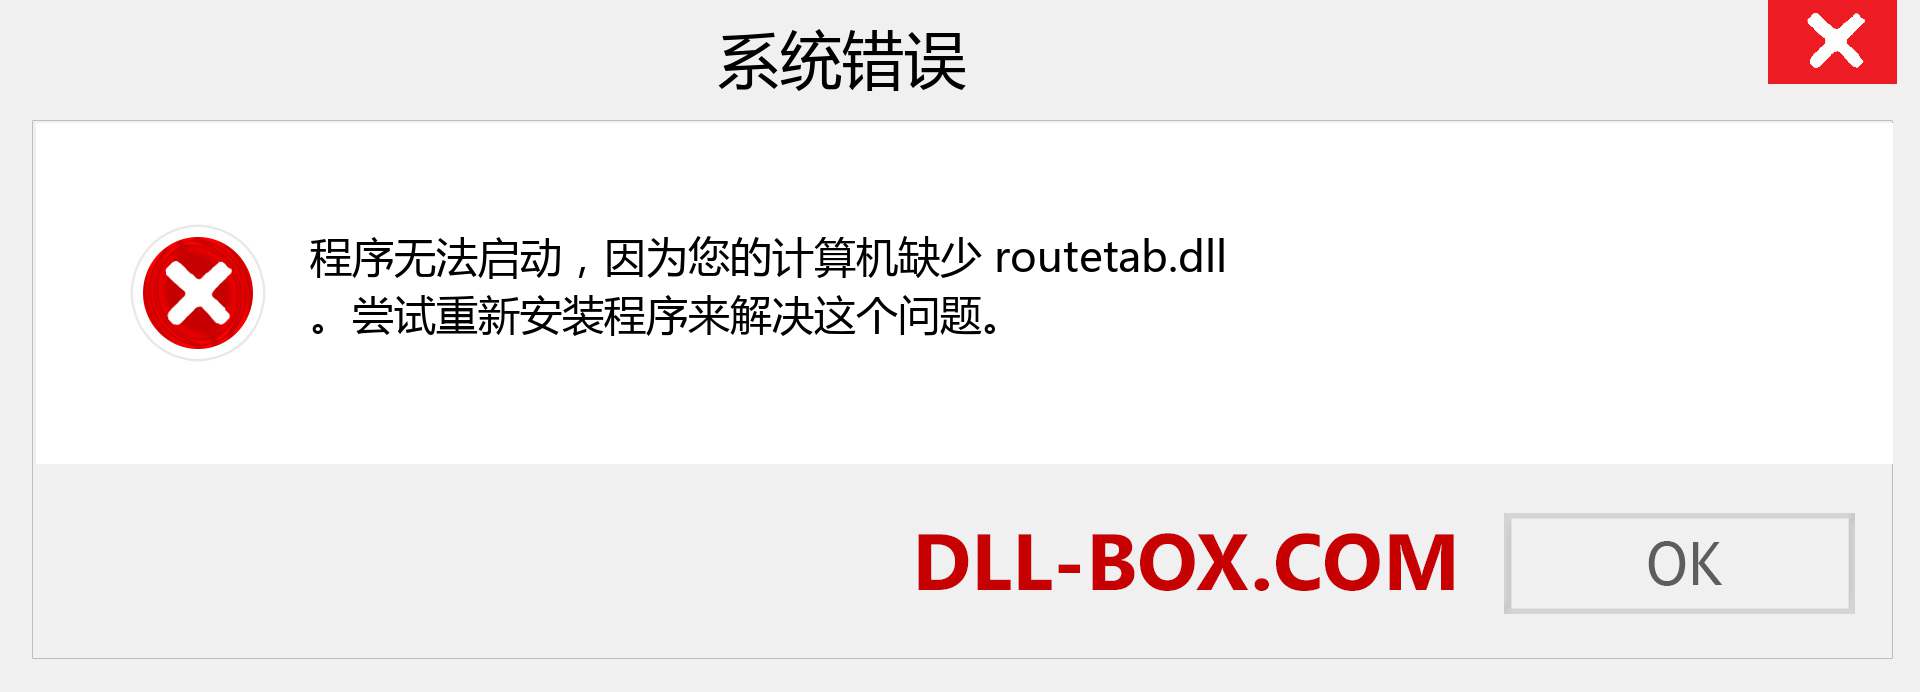 routetab.dll 文件丢失？。 适用于 Windows 7、8、10 的下载 - 修复 Windows、照片、图像上的 routetab dll 丢失错误